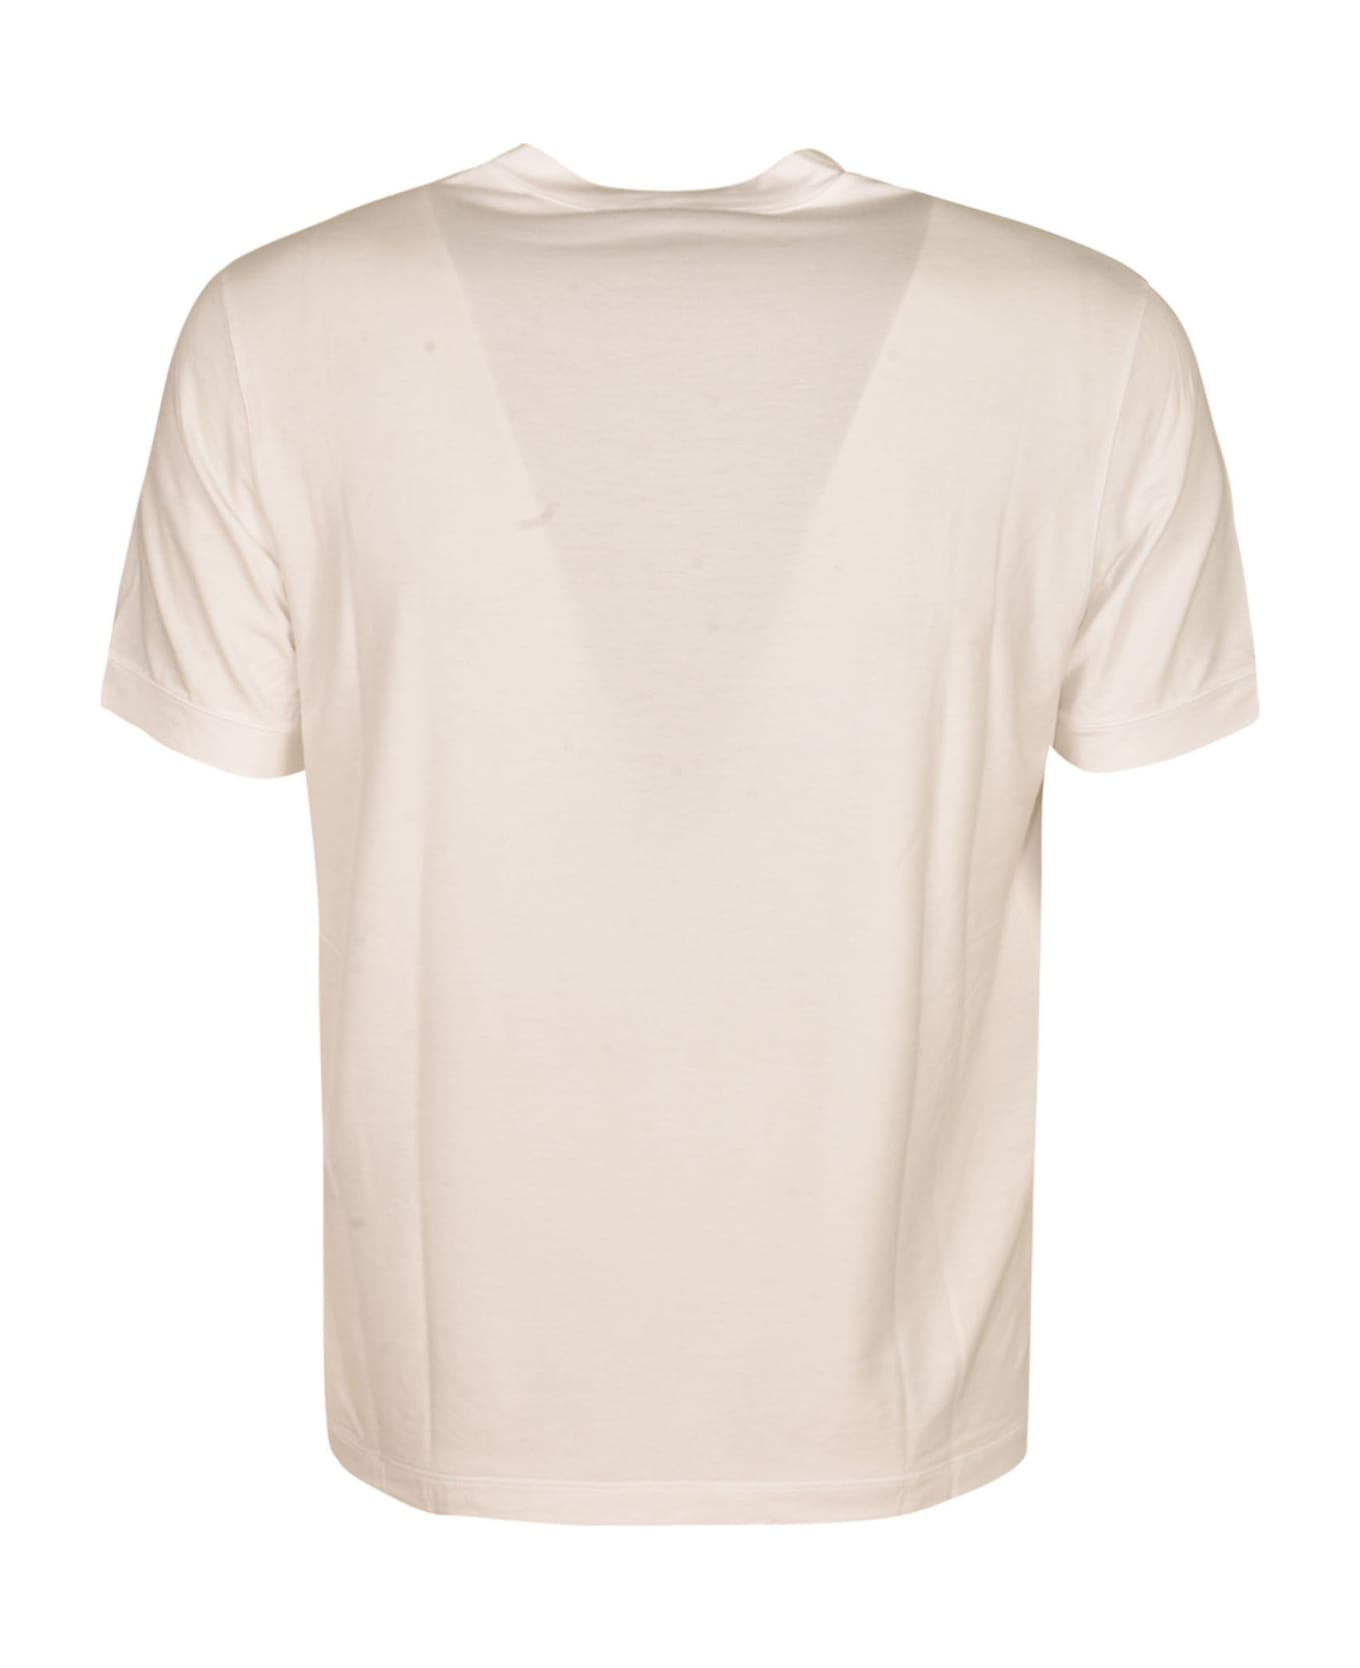 Giorgio Armani Round Neck T-shirt - Optic White